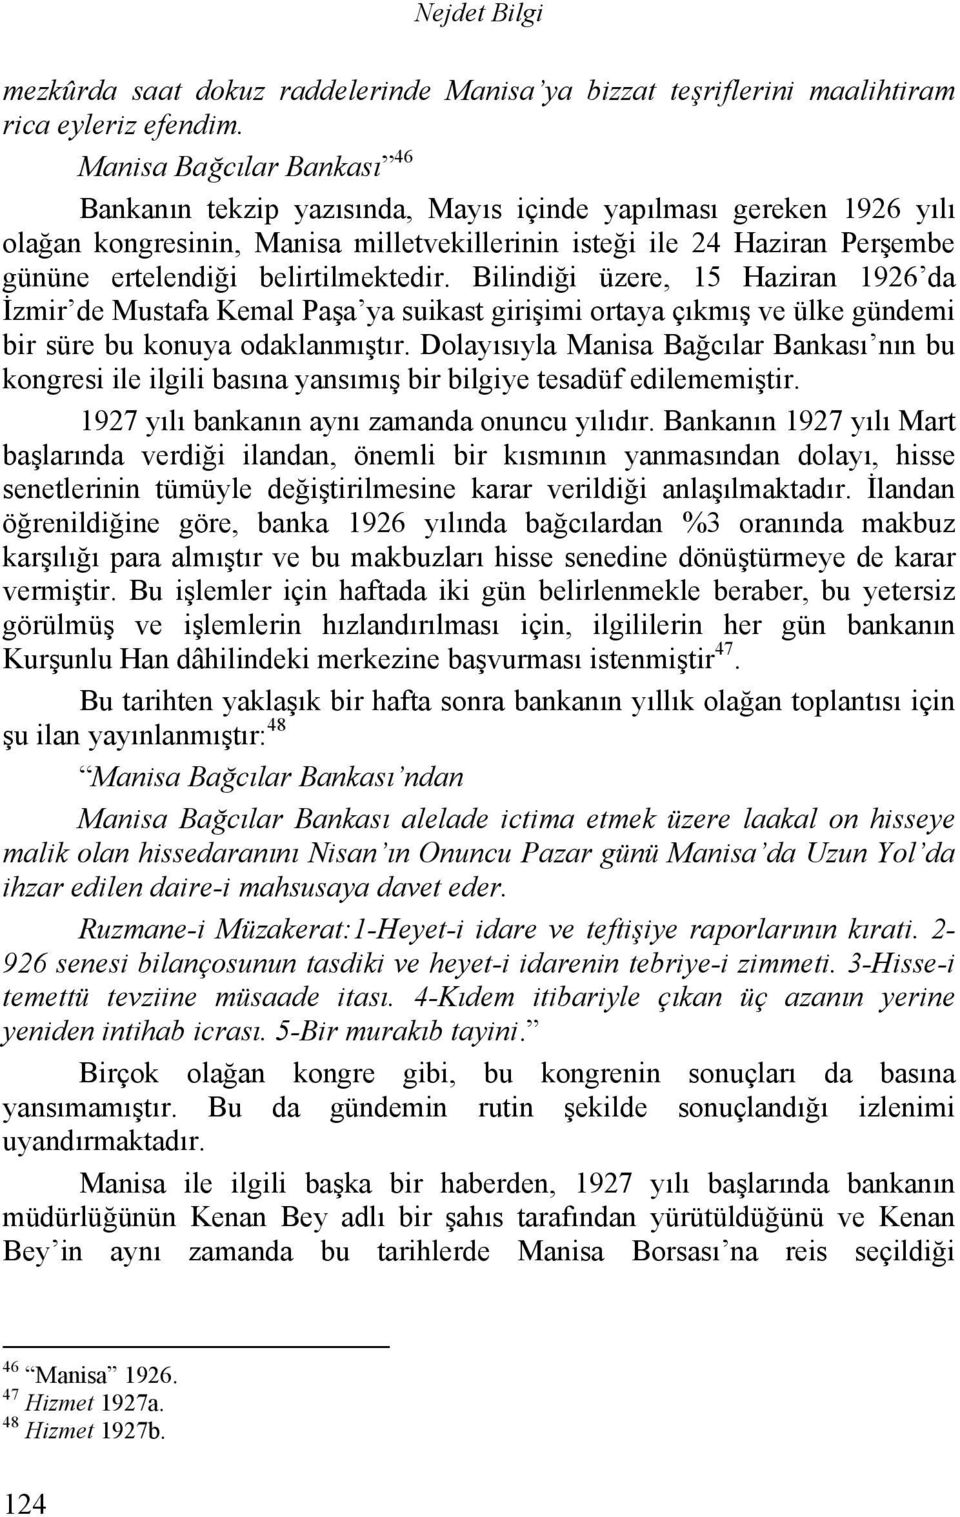 belirtilmektedir. Bilindiği üzere, 15 Haziran 1926 da İzmir de Mustafa Kemal Paşa ya suikast girişimi ortaya çıkmış ve ülke gündemi bir süre bu konuya odaklanmıştır.